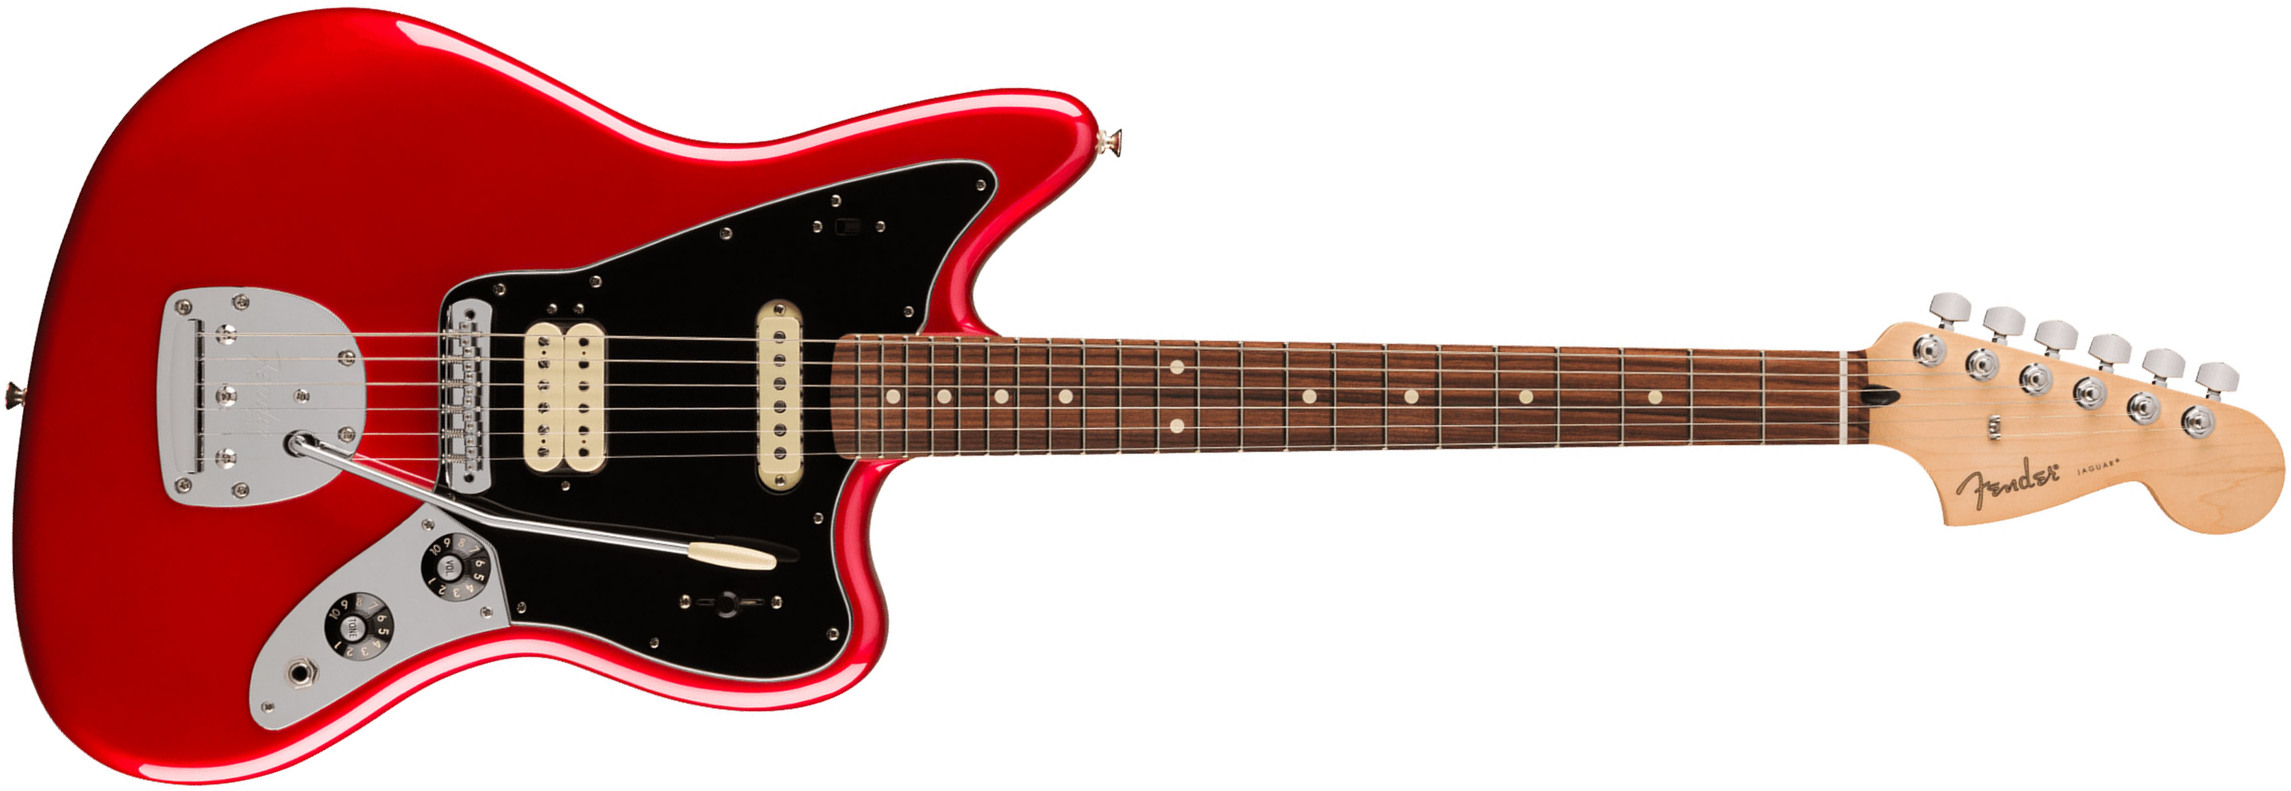 Fender Jaguar Player Mex 2023 Hs Trem Pf - Candy Apple Red - Retro-Rock-E-Gitarre - Main picture